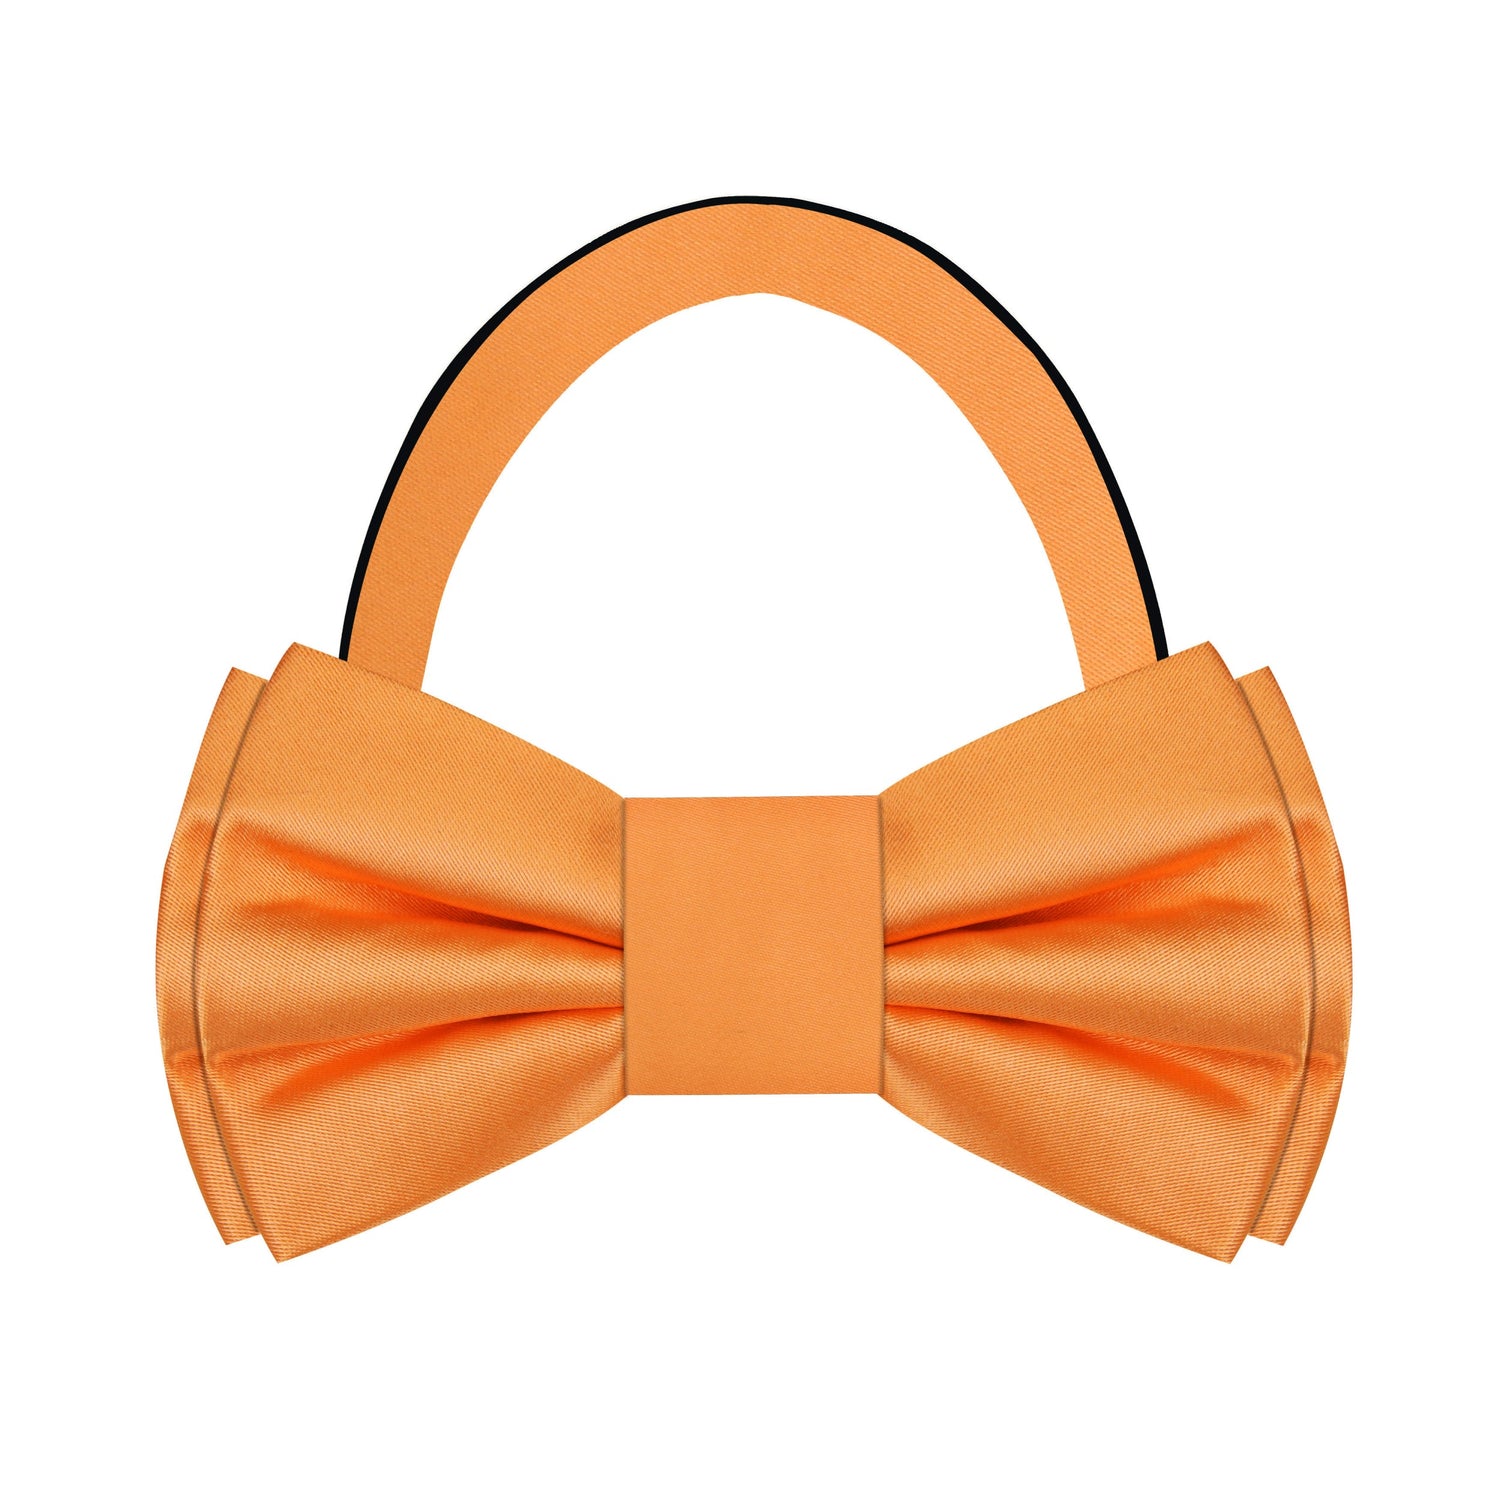 Solid Orange Bow Tie Pre Tied